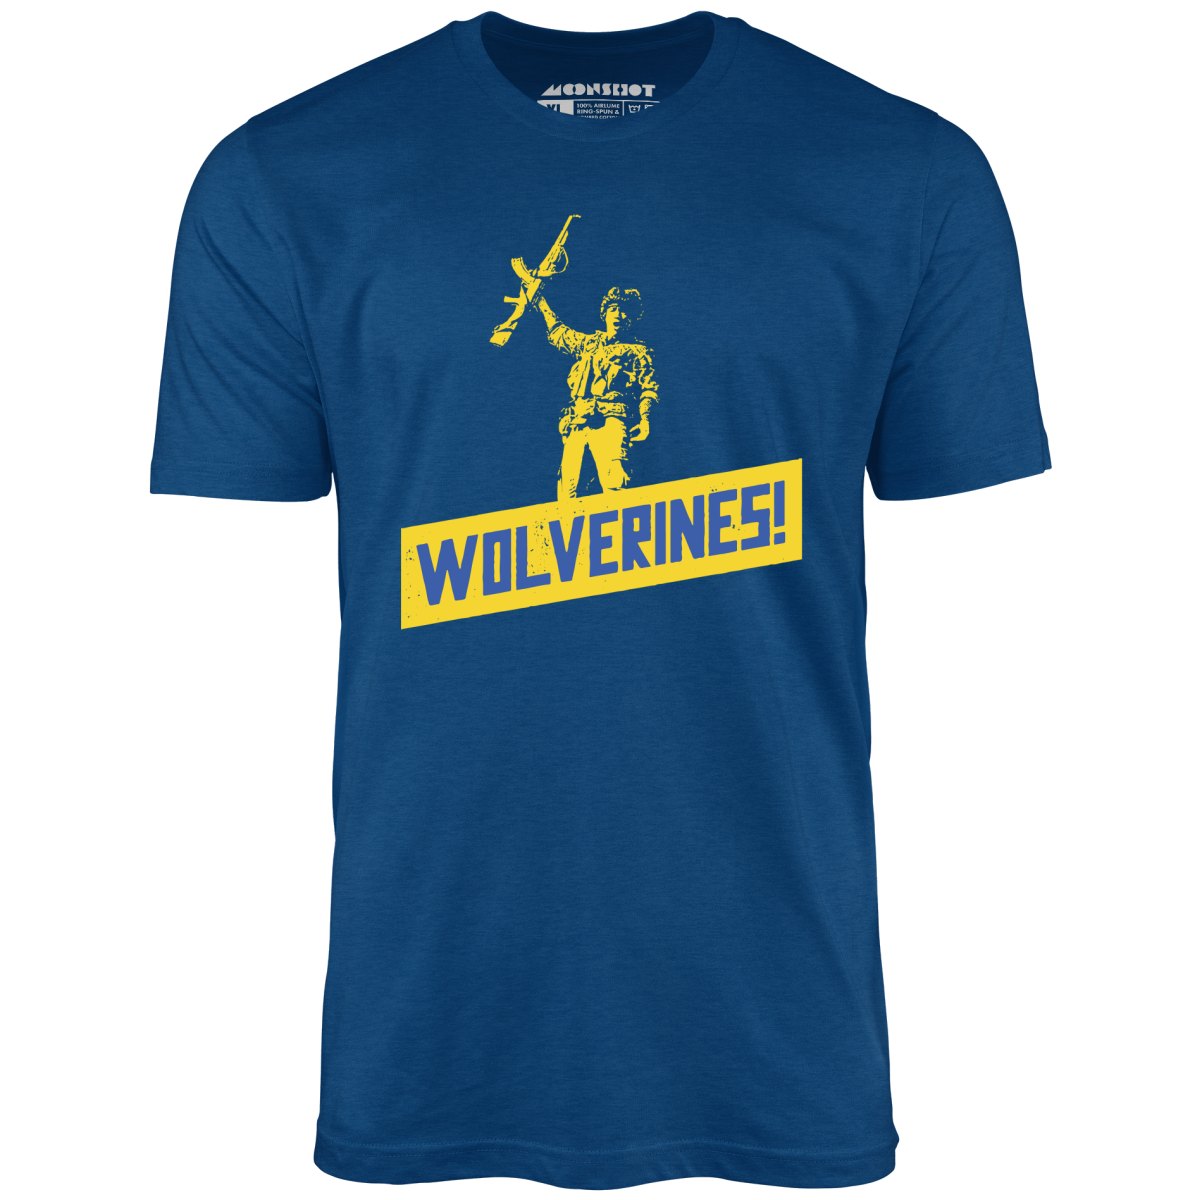 Wolverines Support Ukraine - Unisex T-Shirt